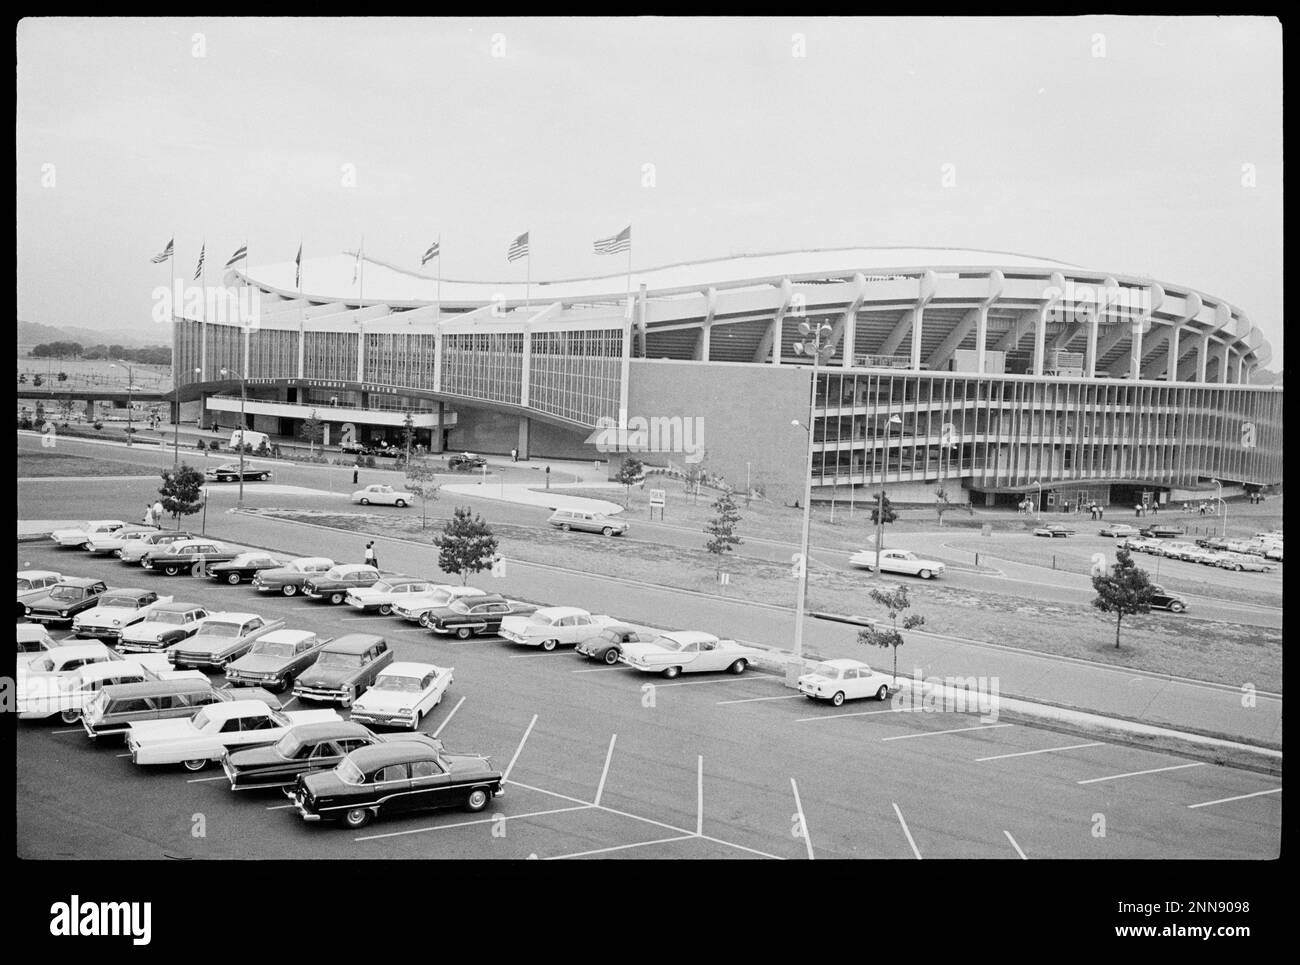 Außenansicht des District of Columbia Stadium - Robert F. Kennedy Memorial Stadium - mit Autos auf den Parkplätzen, Washington, DC, 7/29/1963. (Foto: Marion S Trikosko/US News and World Report Collection Stockfoto